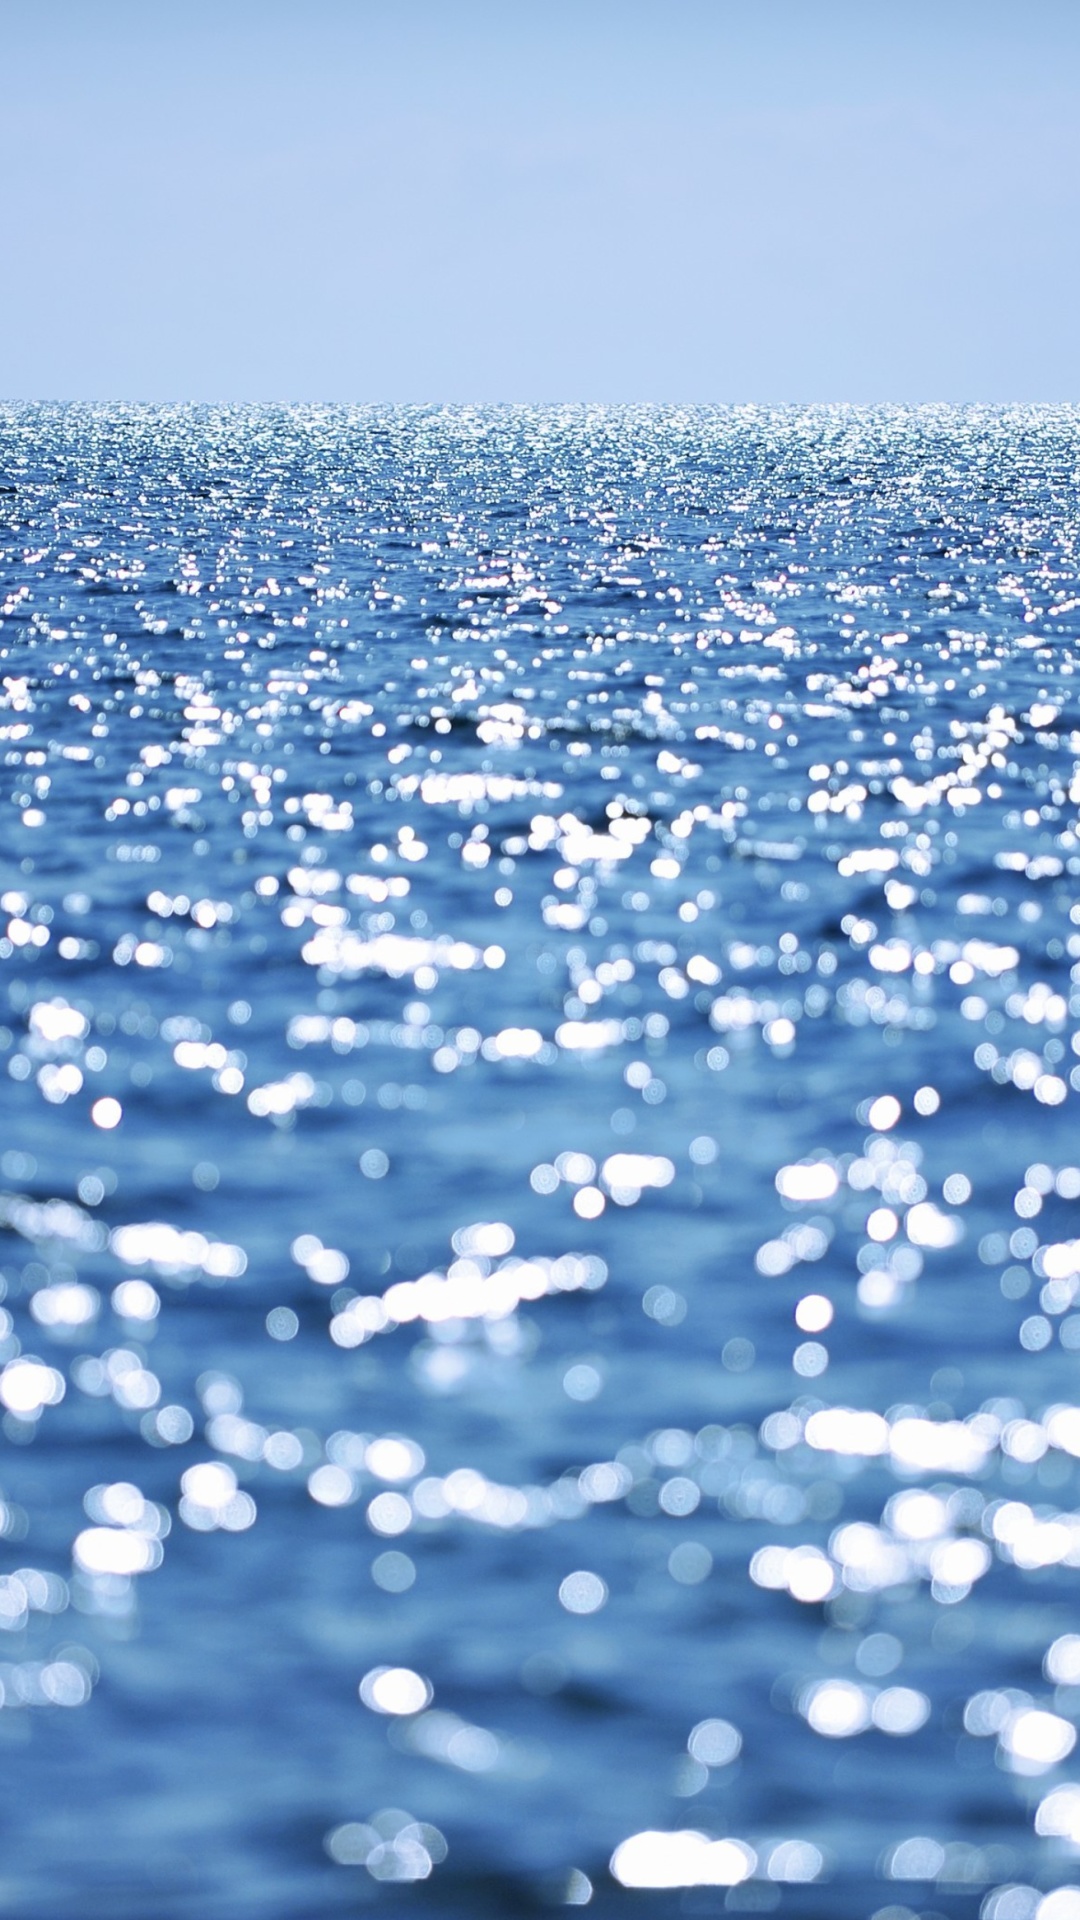 Ocean Water wallpaper 1080x1920